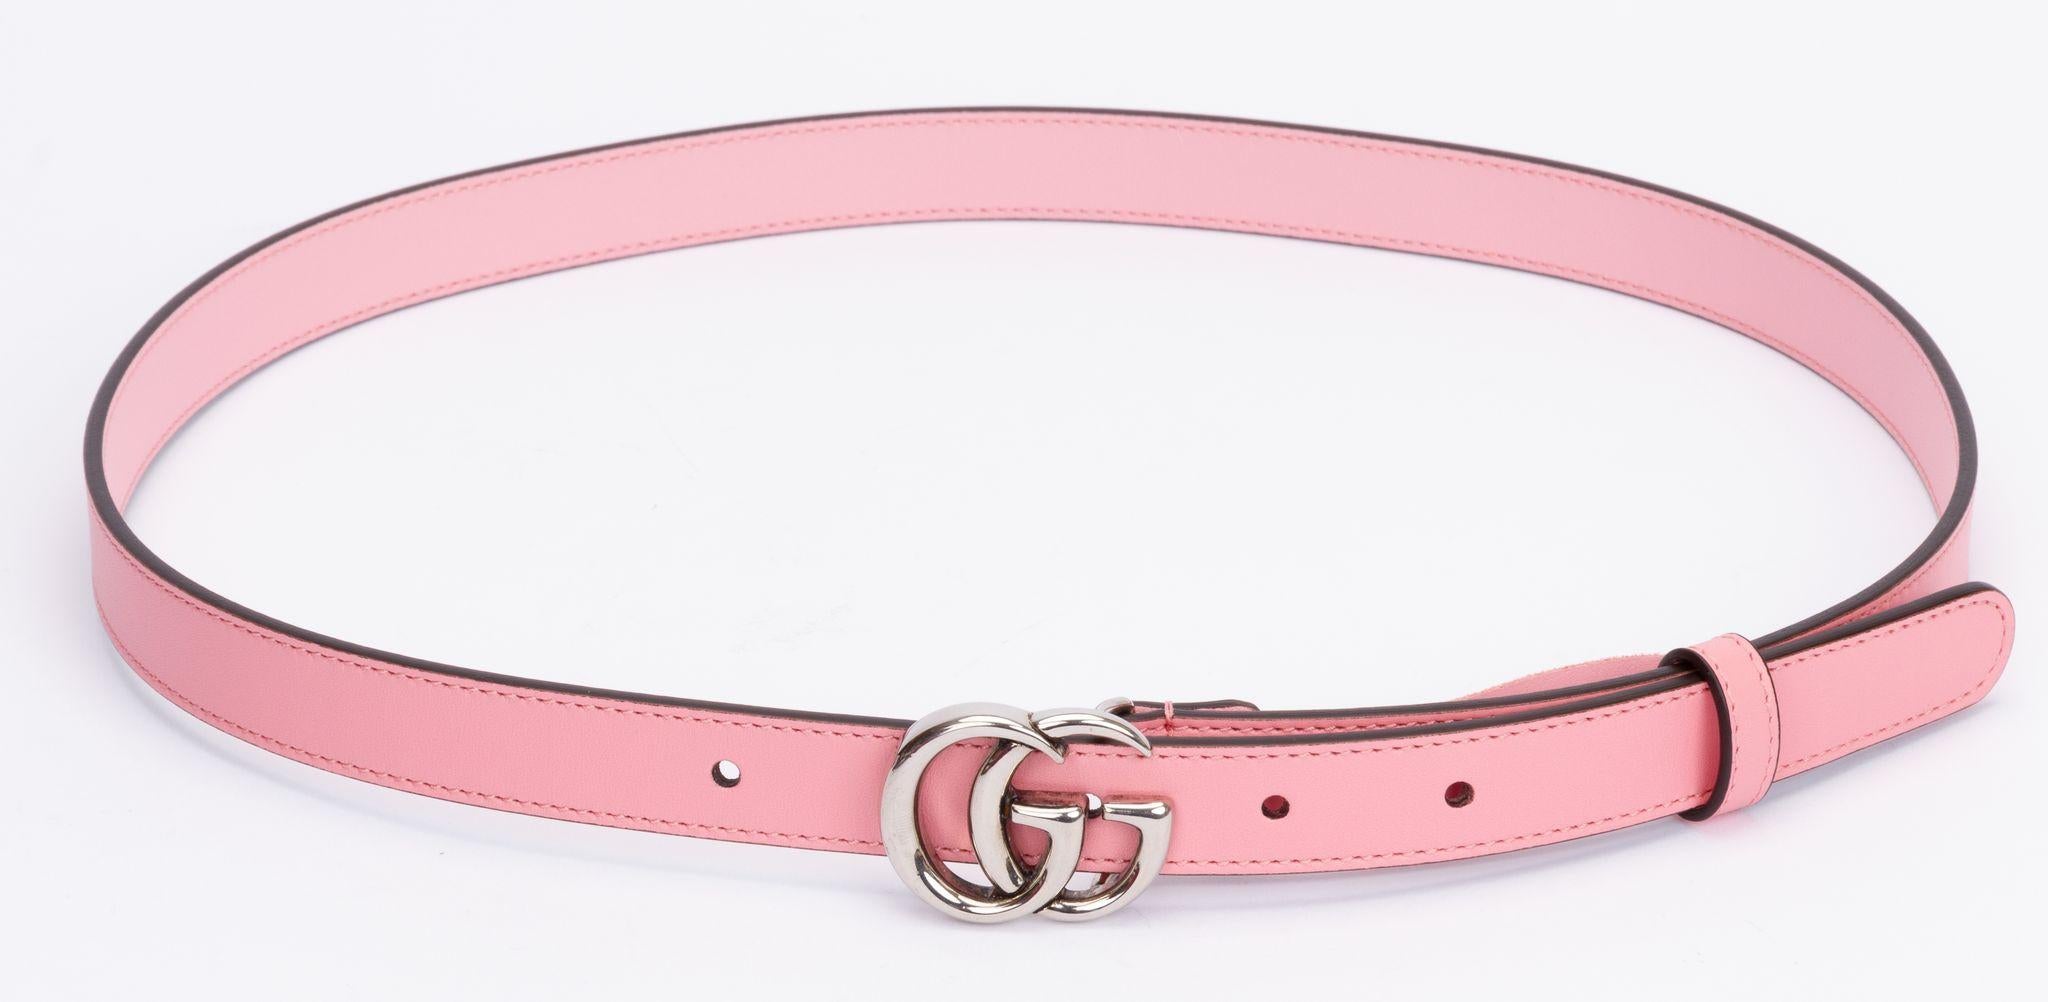 Ceinture Gucci en rose. Cette ceinture fine est de couleur rose et la boucle porte le logo GG en métal argenté. La pièce est neuve et est livrée avec sa housse d'origine.